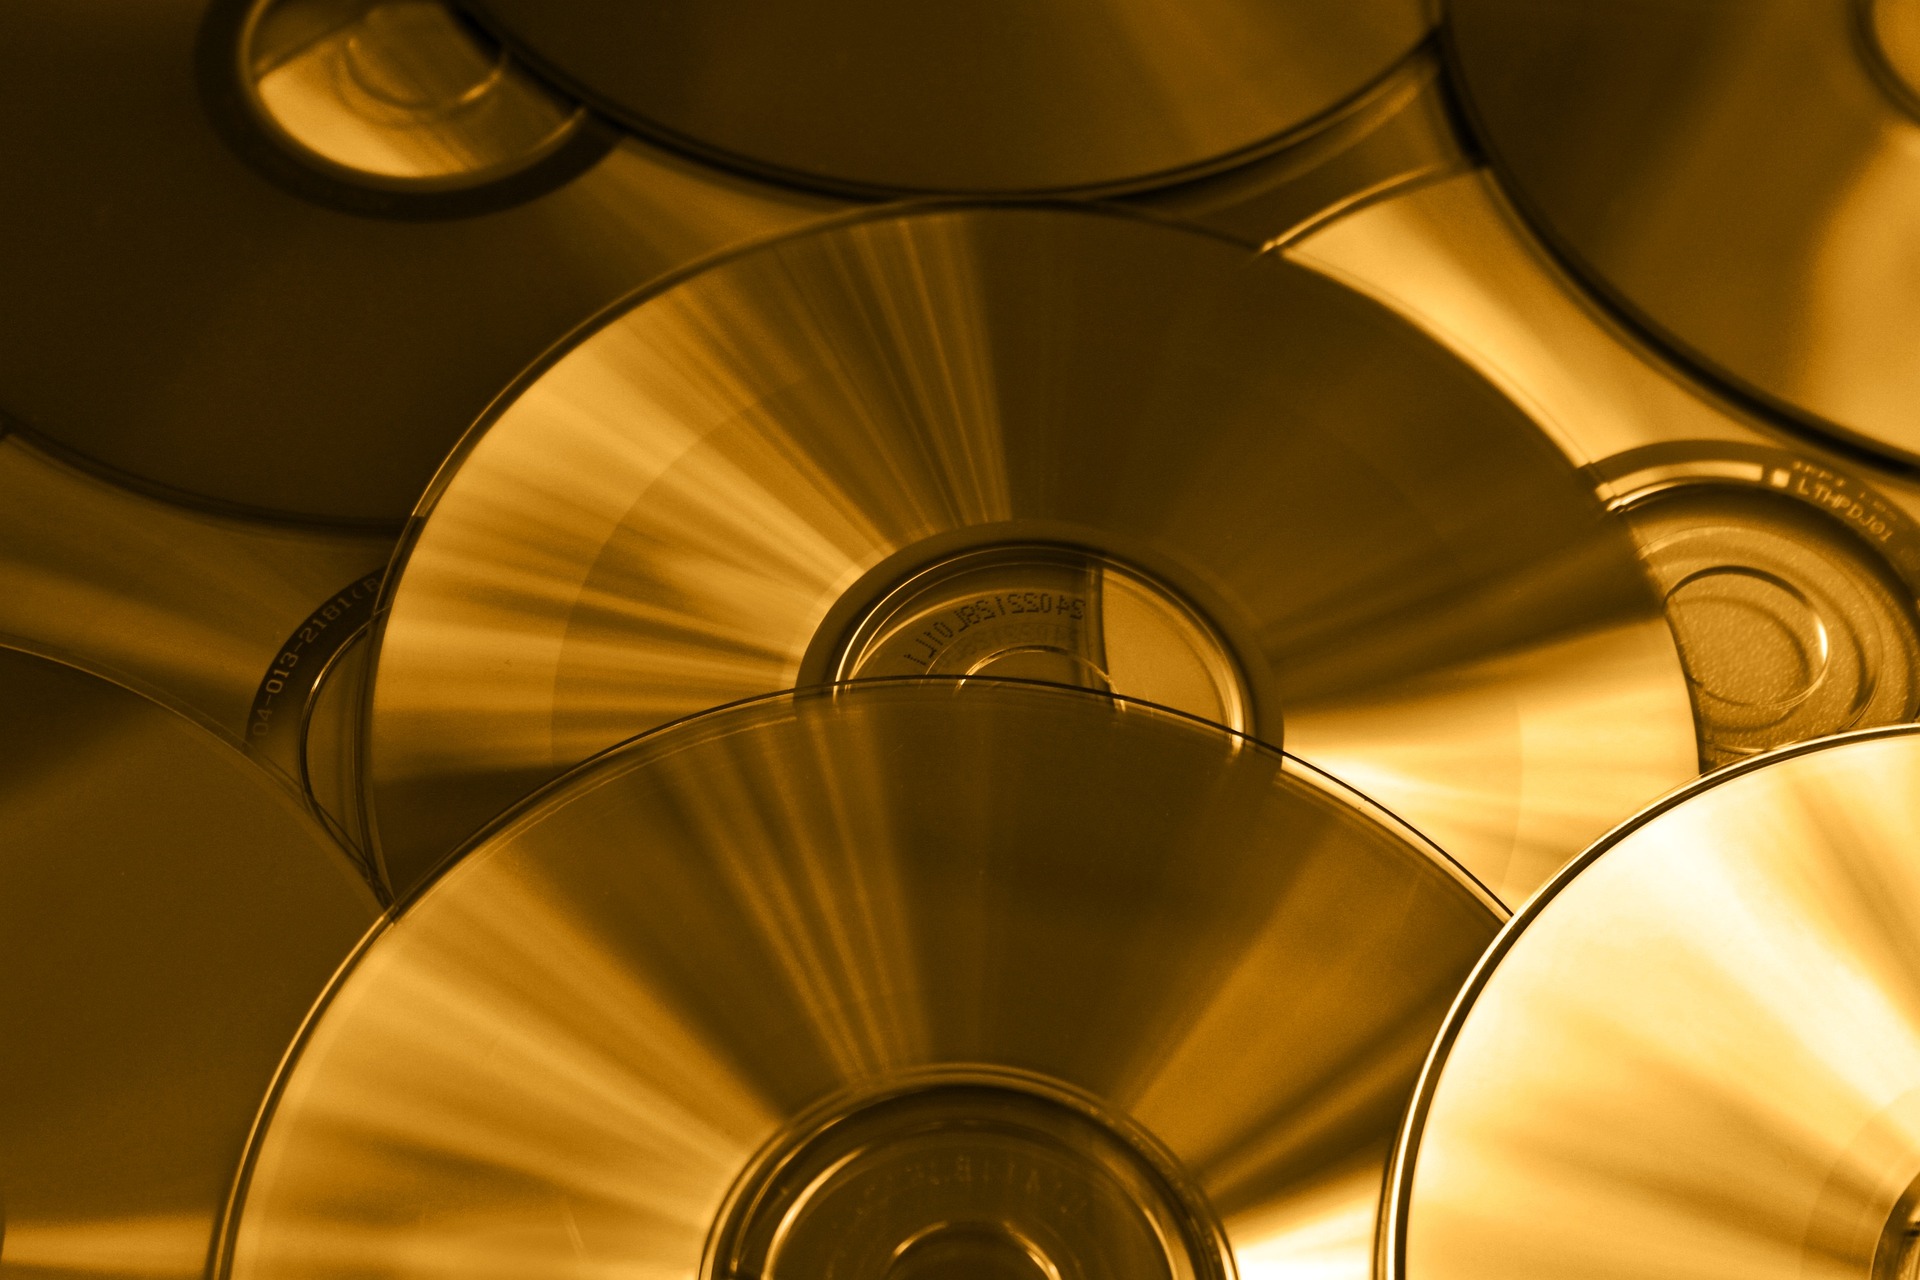 Auf diesem Bild ist ein Stapel glänzender CDs zu sehen, die übereinander gestapelt sind. Die CDs haben eine reflektierende Oberfläche, die ein schillerndes Licht- und Farbspiel erzeugt. Die CDs liegen auf einem Tisch und werden von einem goldenen Schimmer durchleuchtet. Die Nahaufnahme fängt die komplizierten Details der CDs ein und zeigt ihre zylindrische Form und den reflektierenden Rand.